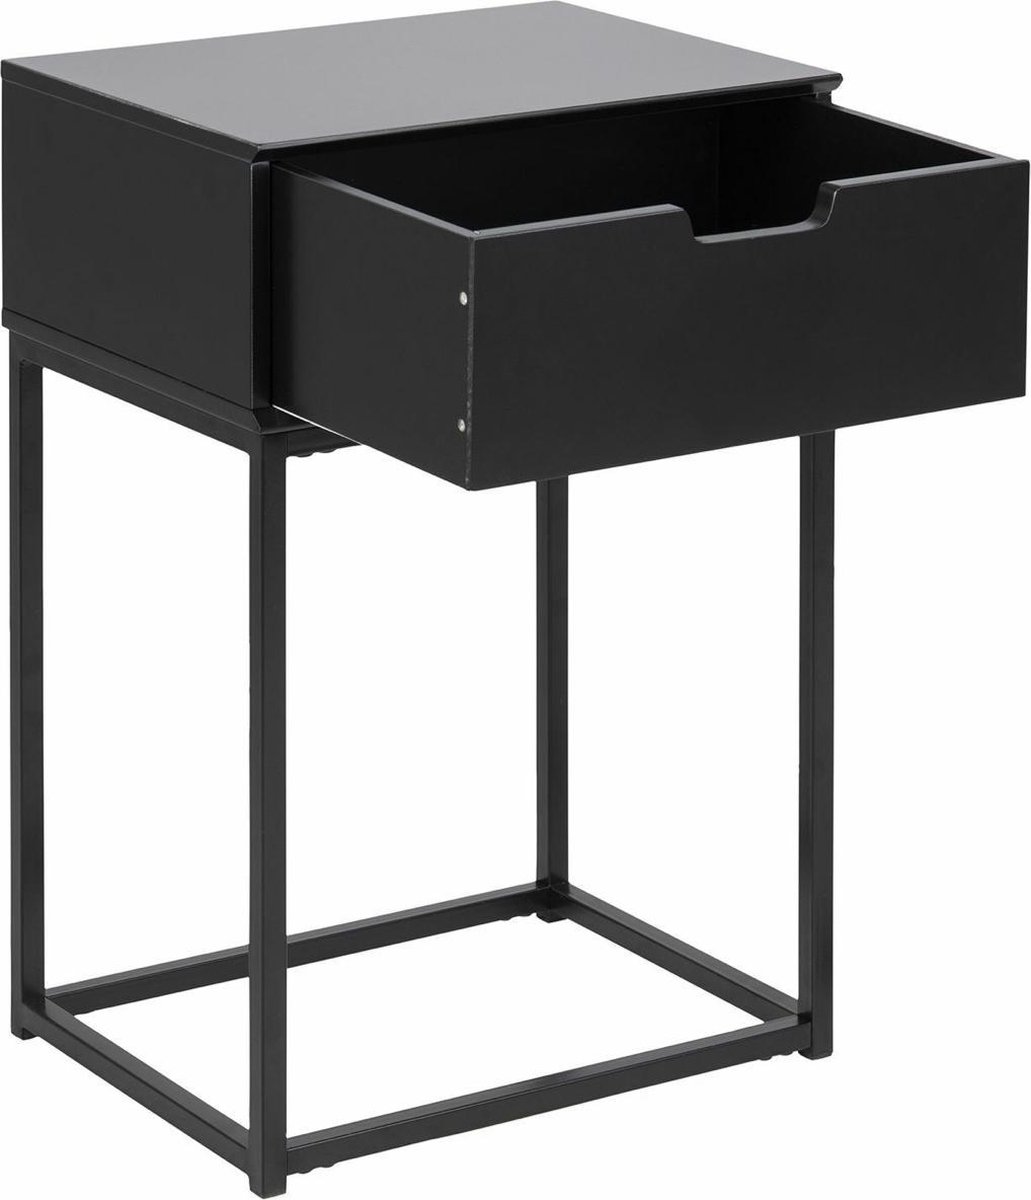 Bijzettafel met lade - industriële stijl - nachtkast- zwart-40 x 30 x 50 cm - Metal side table